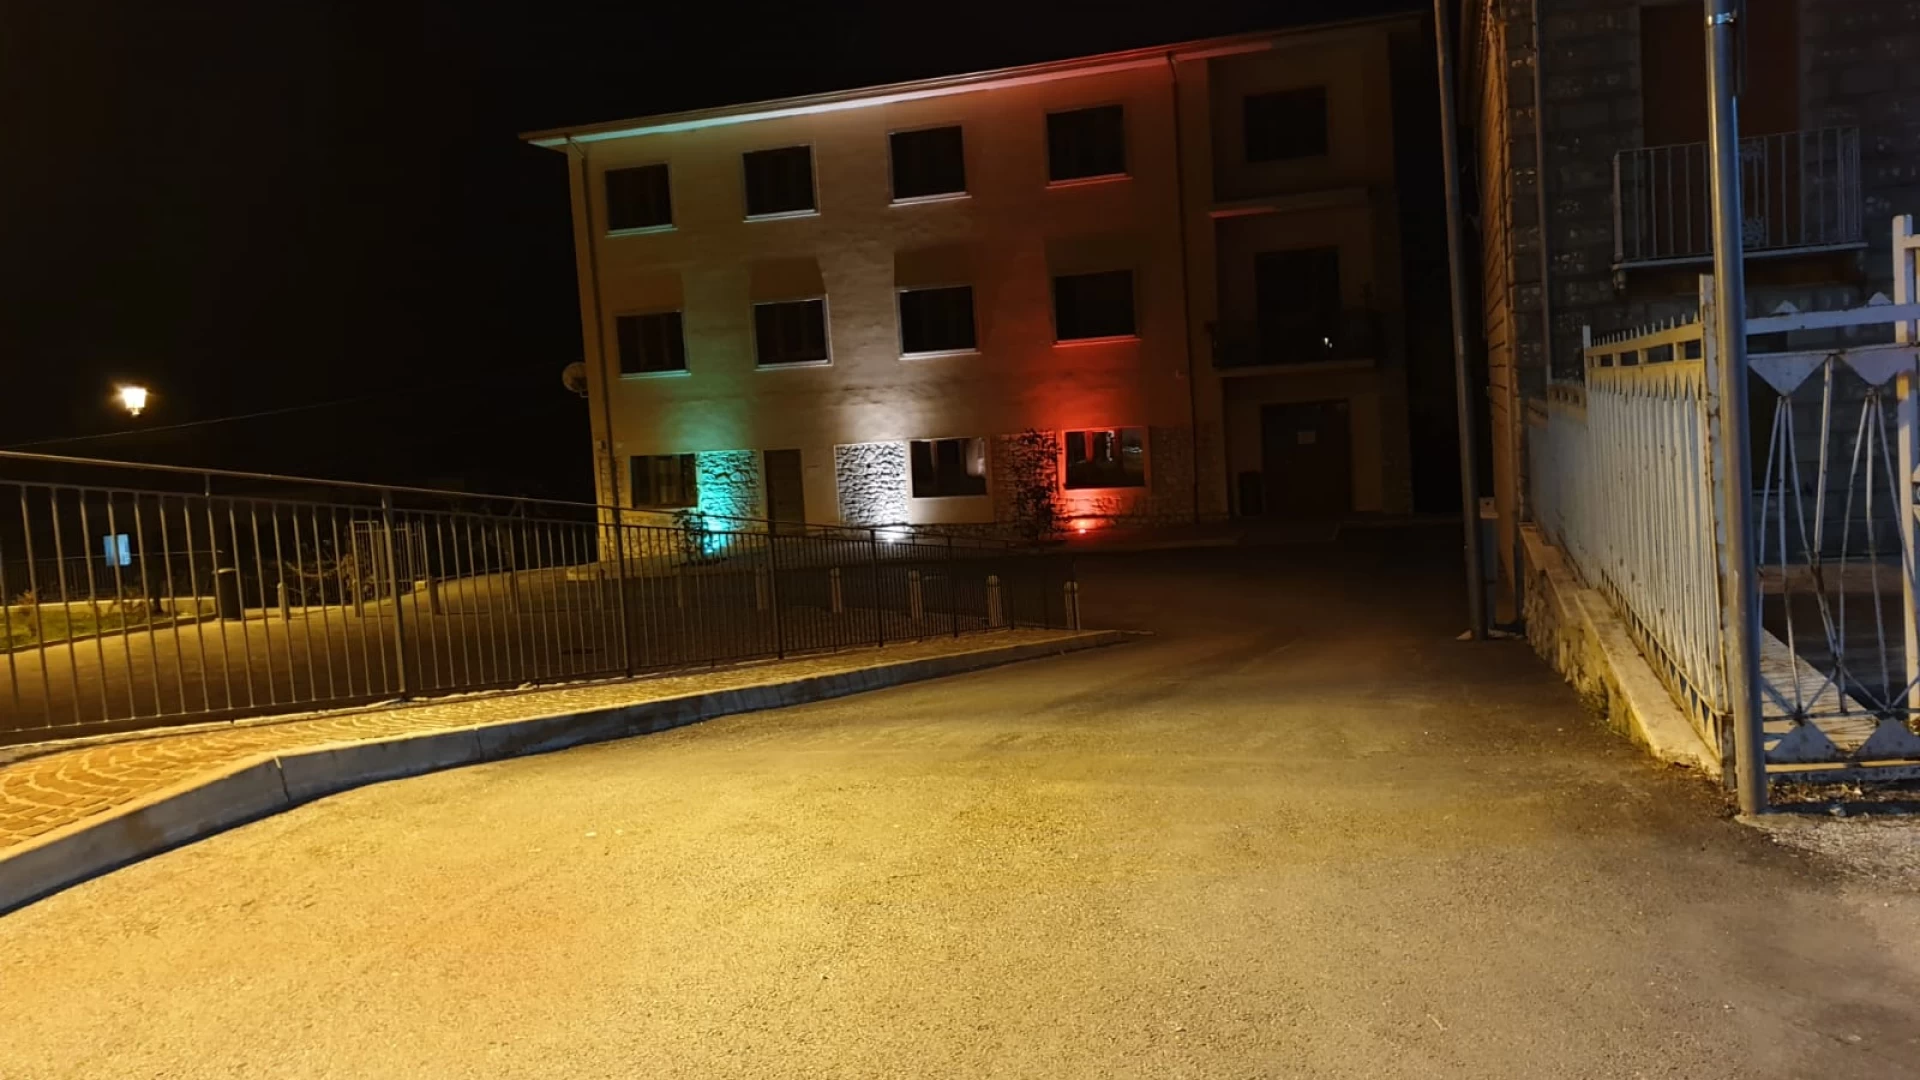 Festa della Liberazione e lotta al Covid-19, la facciata del comune di Fornelli si illumina con il tricolore.